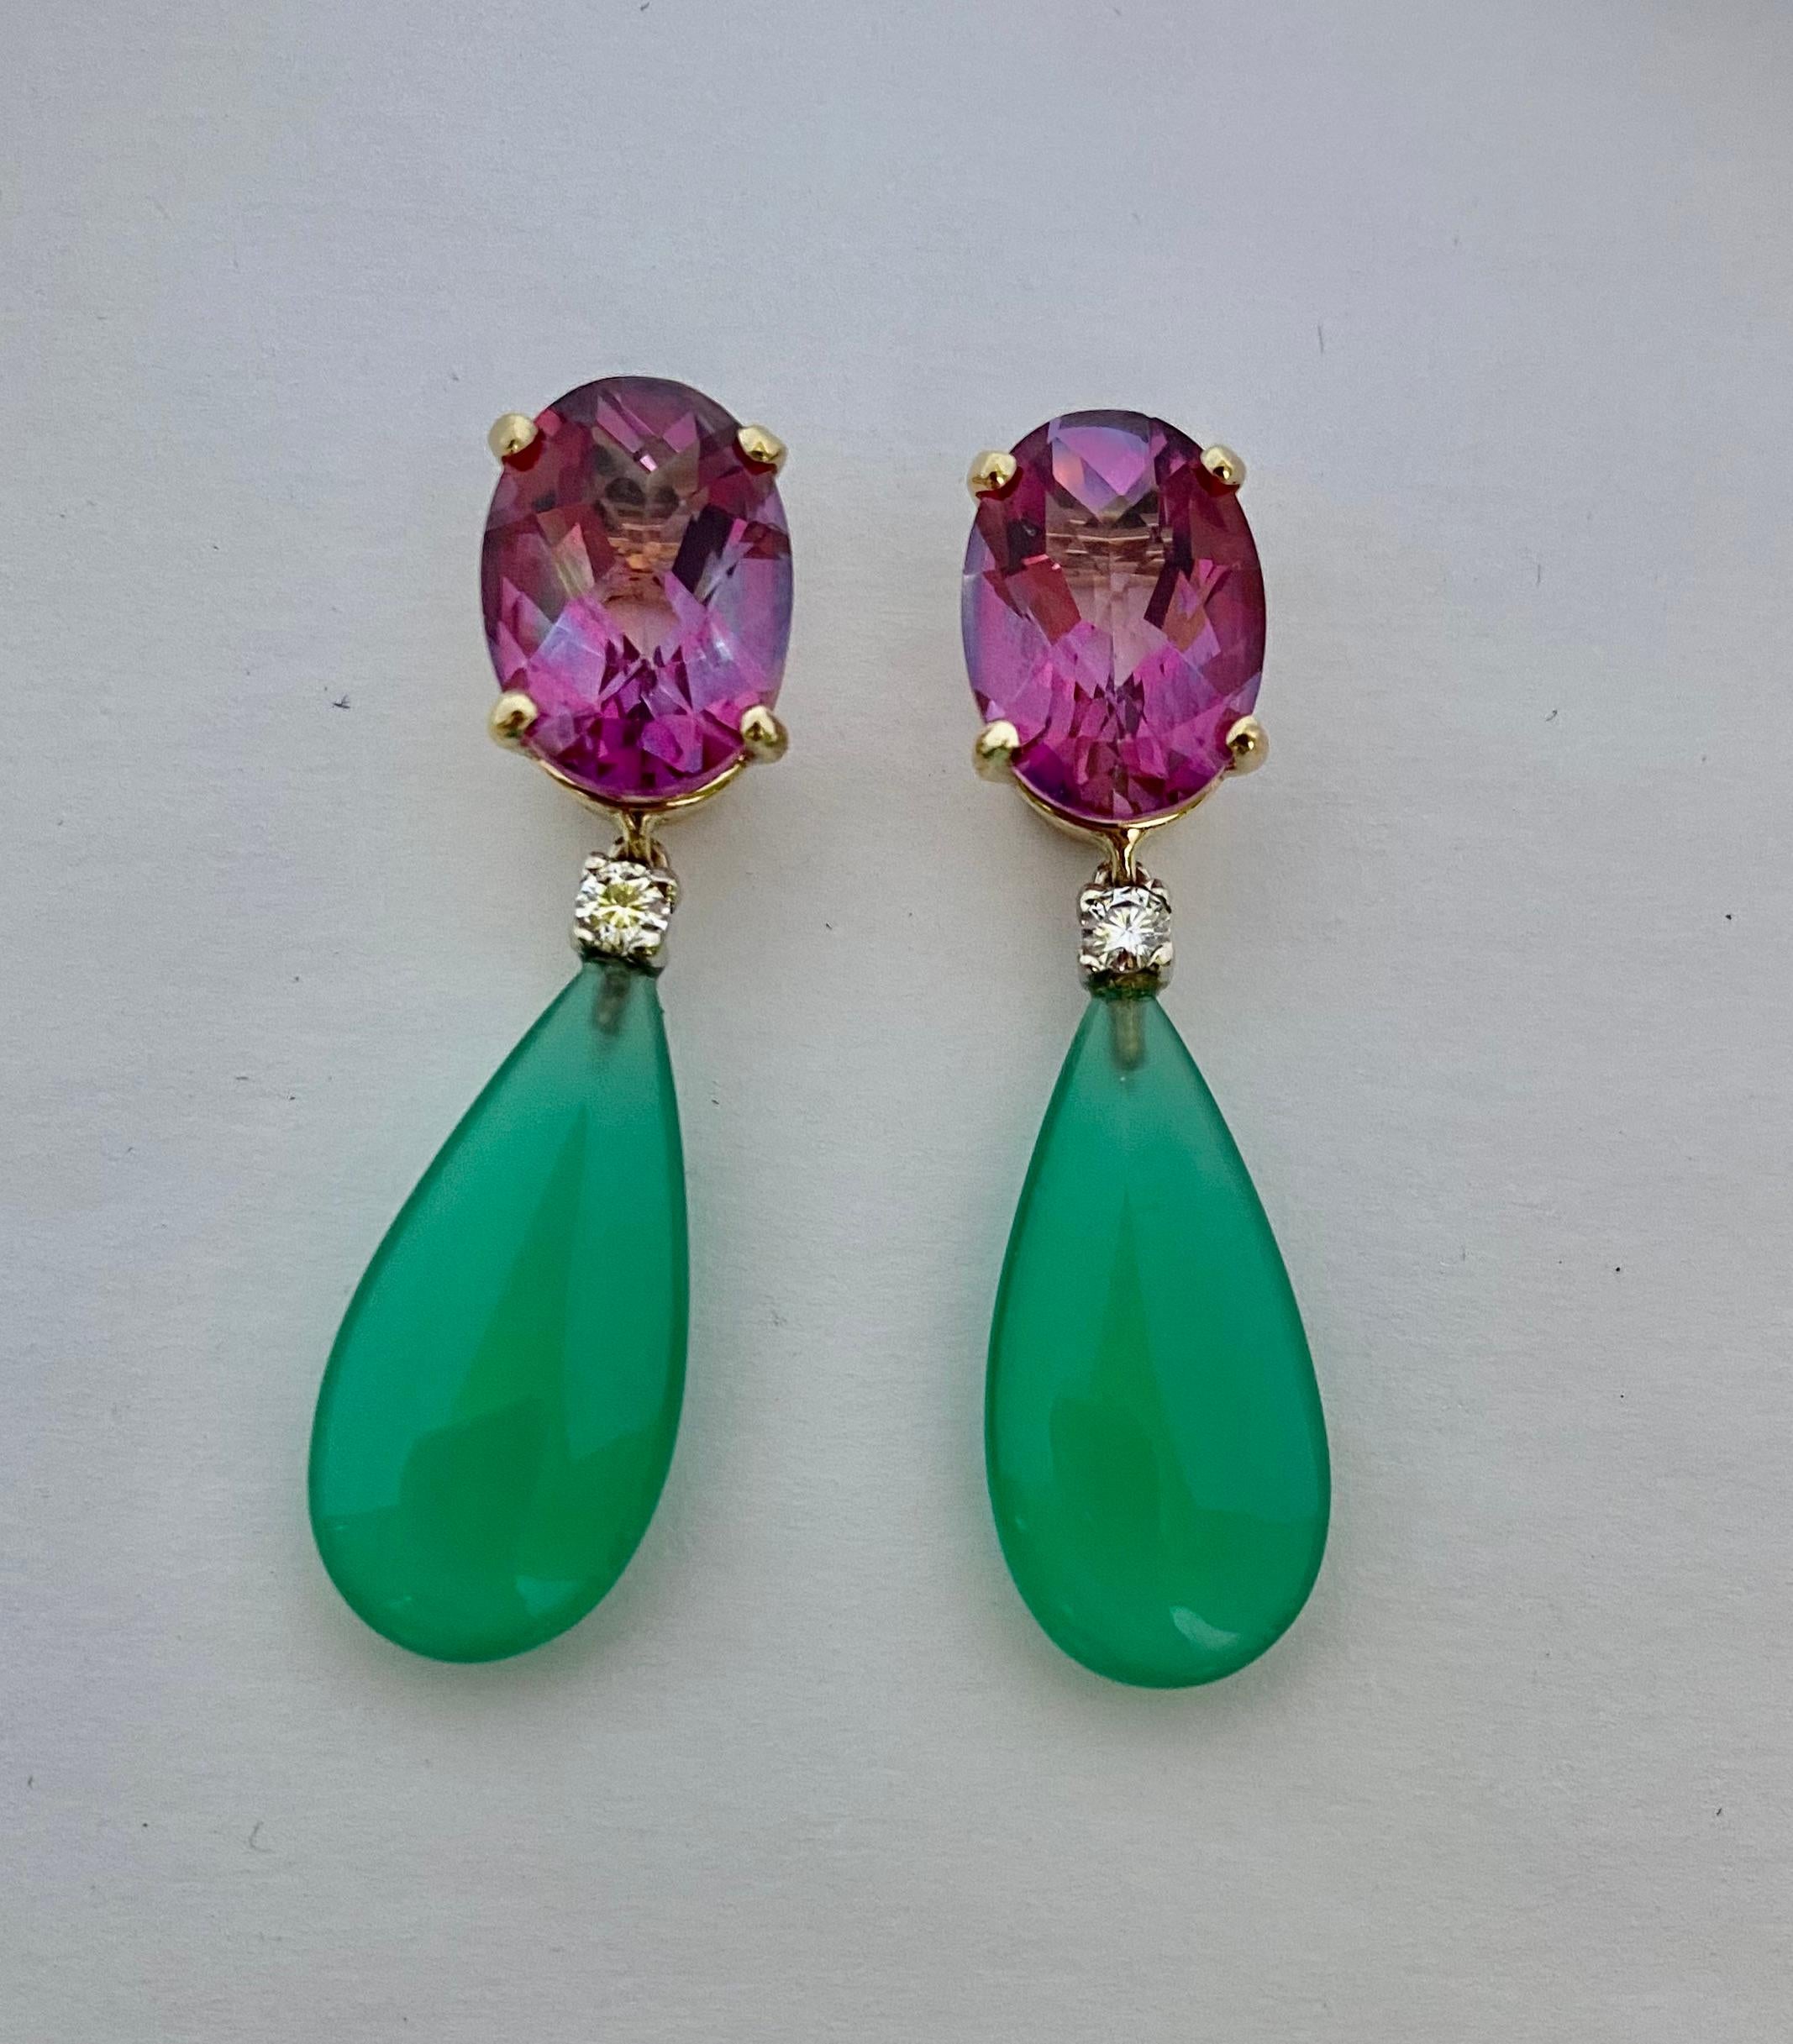 La topaze rose et l'onyx vert sont combinés dans ces boucles d'oreilles pendantes.  Les topazes ovales sont facettées en damier.  Les pierres précieuses sont bien taillées et polies.  Les gouttes sont façonnées en onyx vert.  Ils sont translucides,